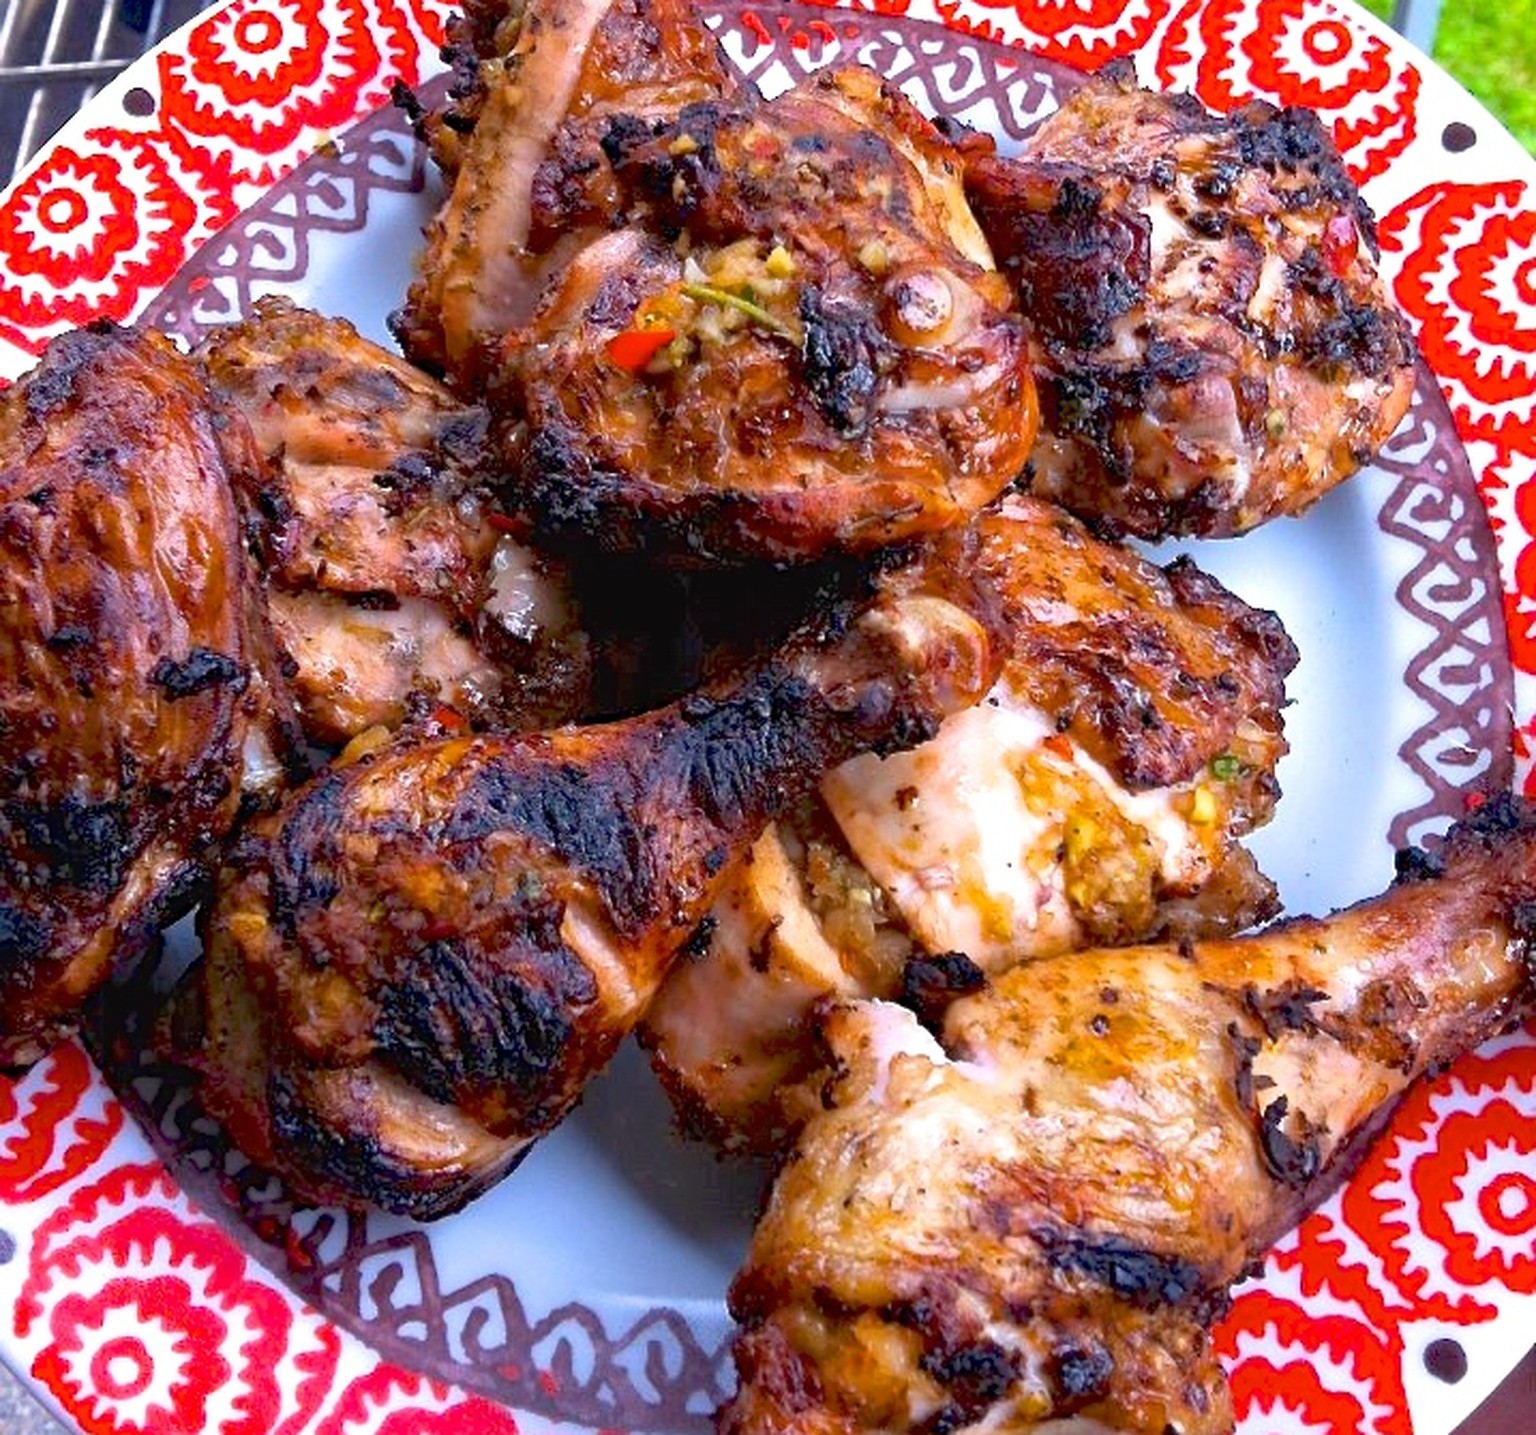 Jamaican jerk chicken https://www.facebook.com/oliver.baroni/media_set?set=a.10150335124743235.345753.609598234&amp;type=3